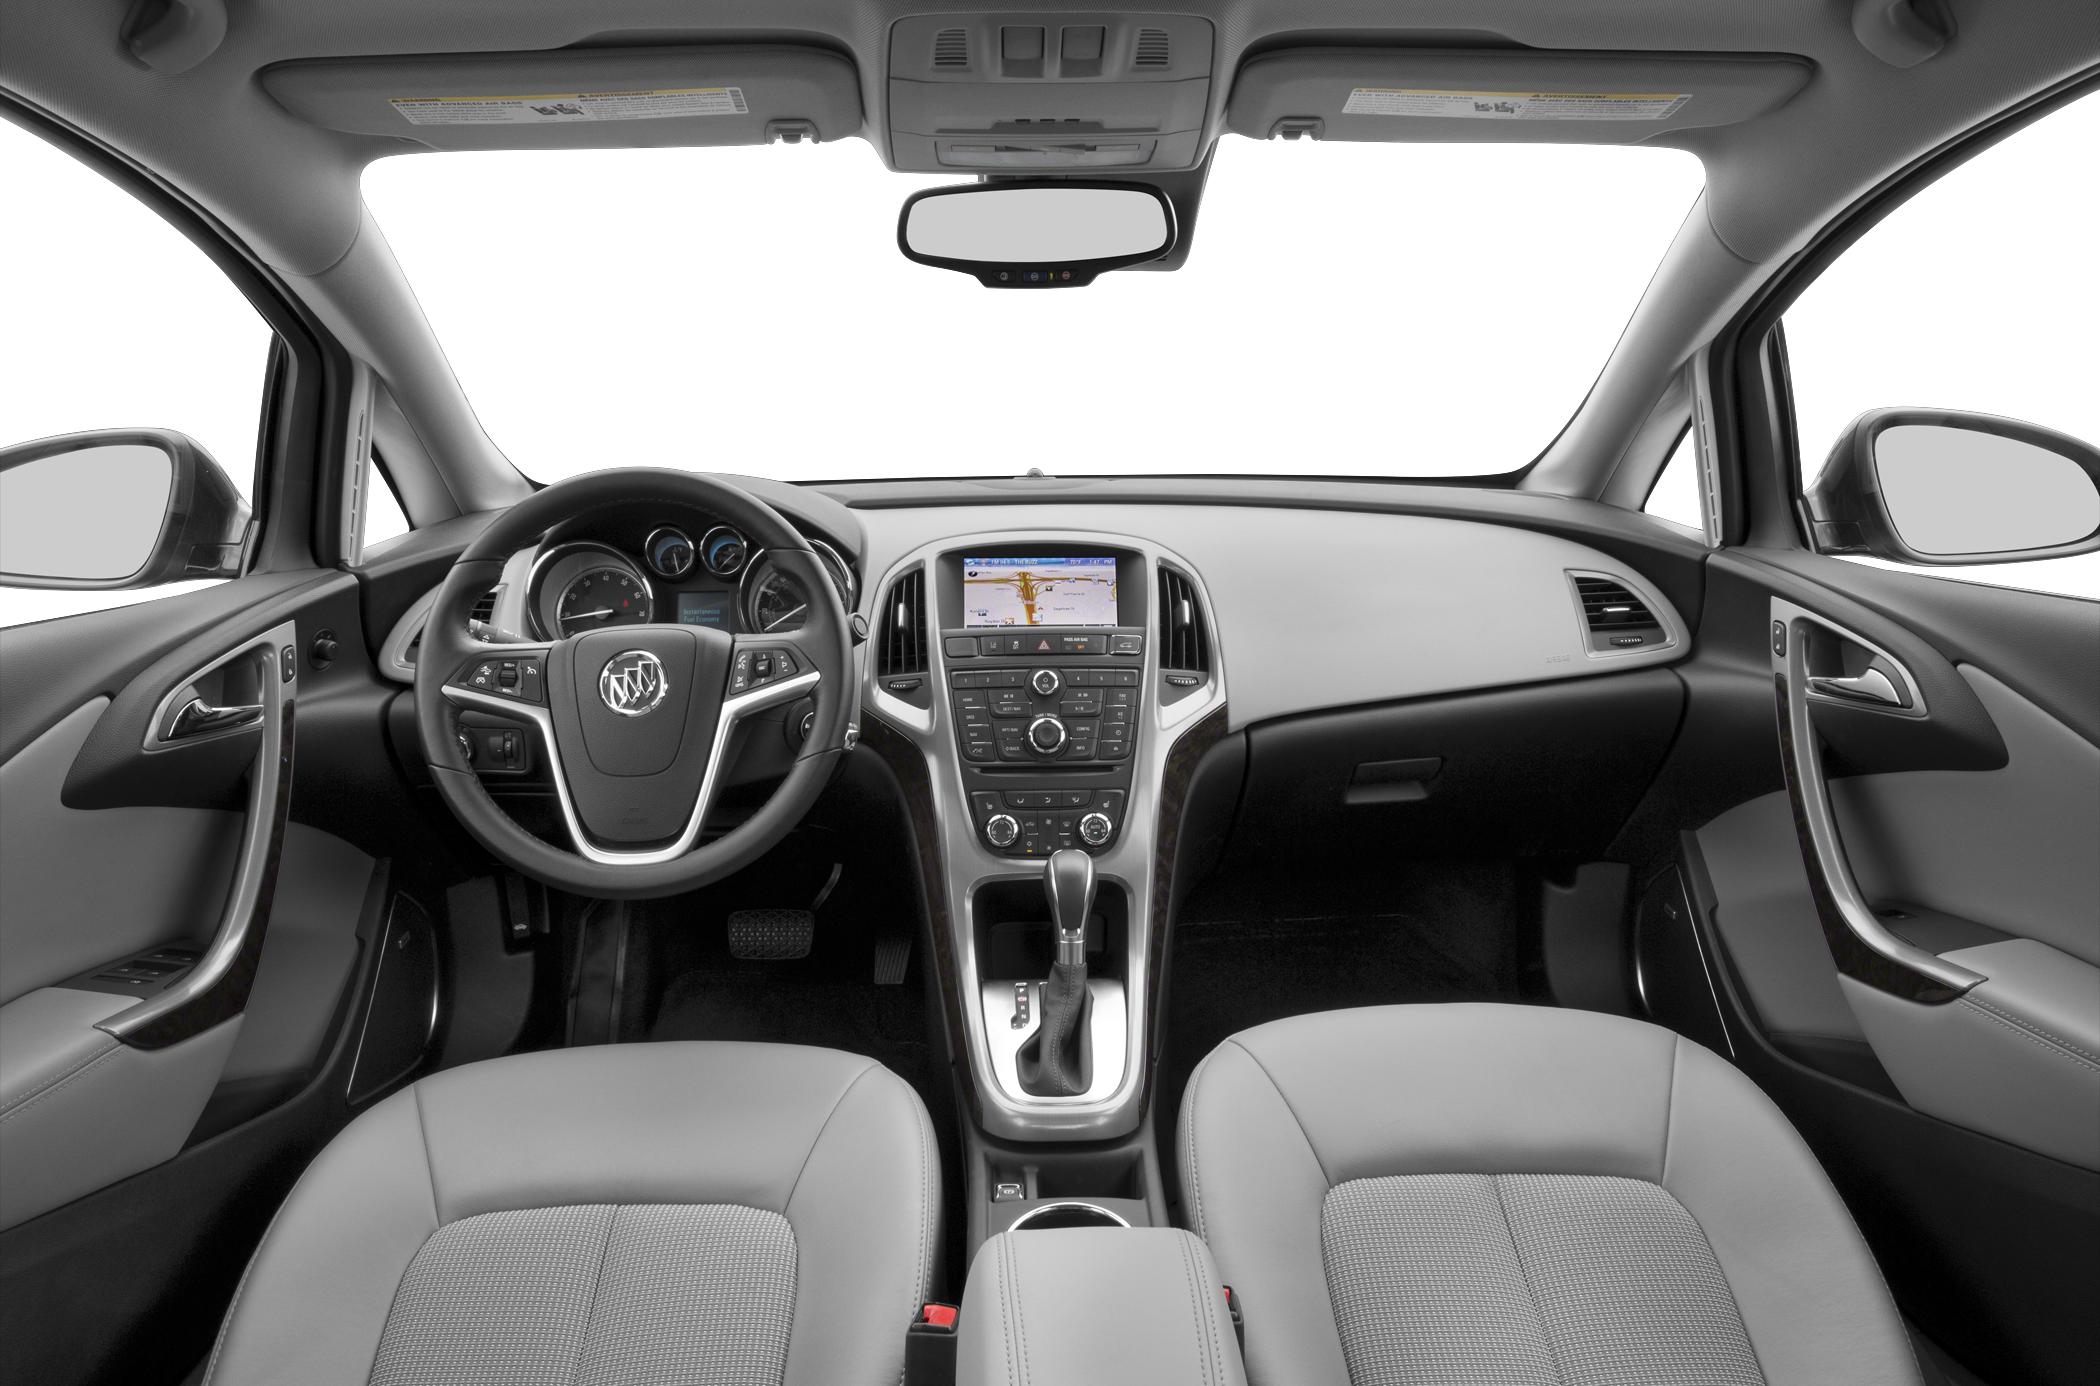 2016 Buick Verano